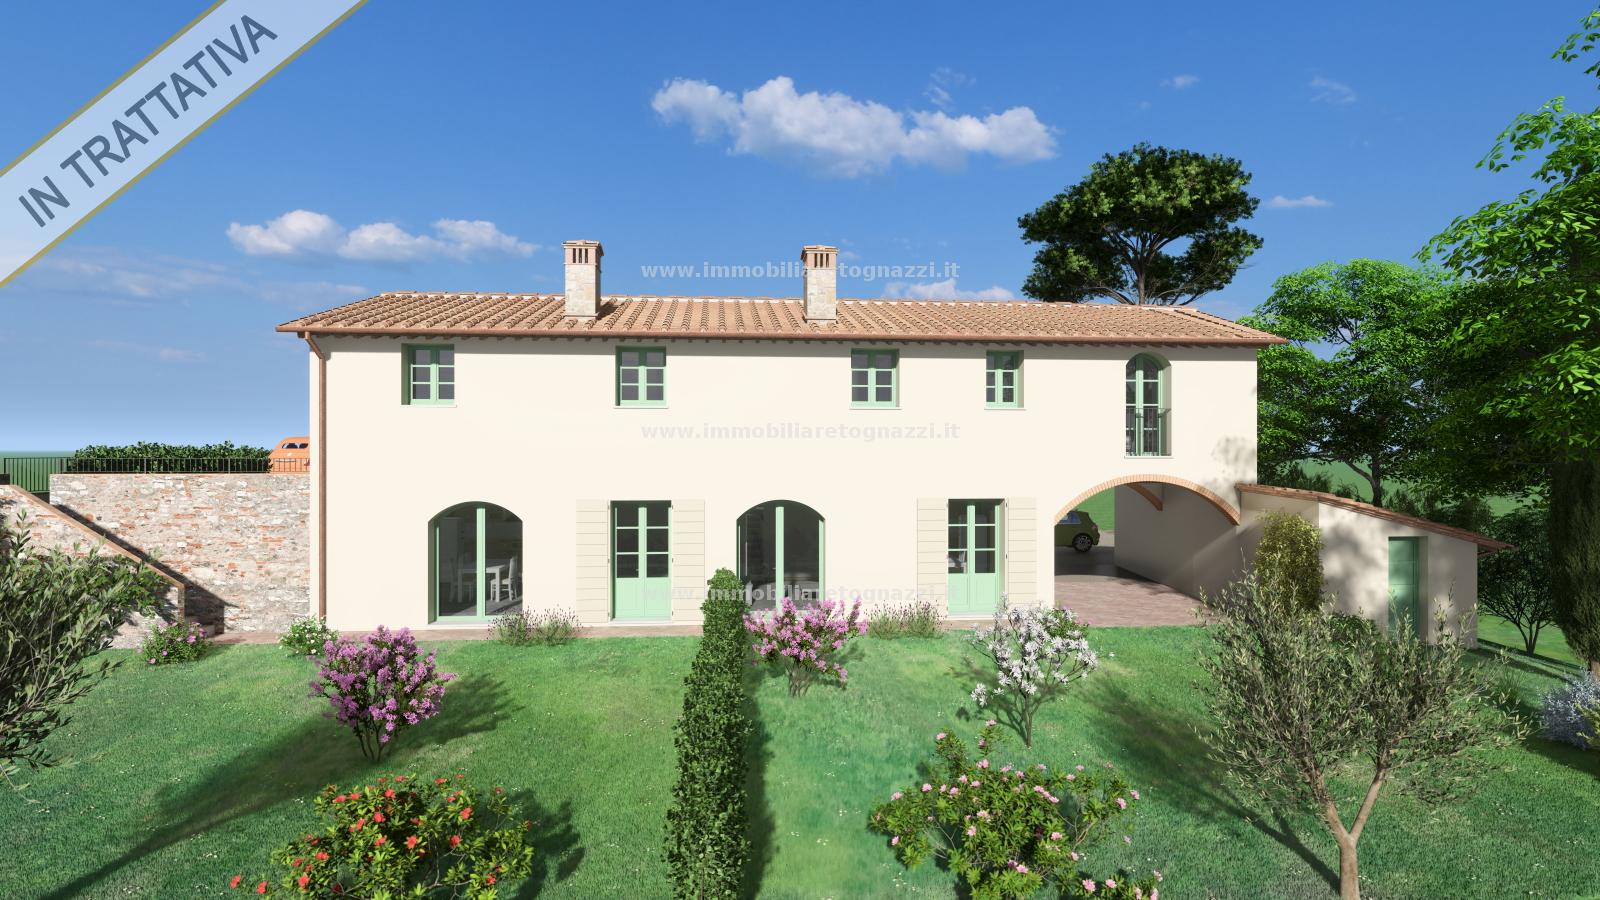 Villa a Schiera in vendita a Certaldo, 4 locali, prezzo € 350.000 | PortaleAgenzieImmobiliari.it